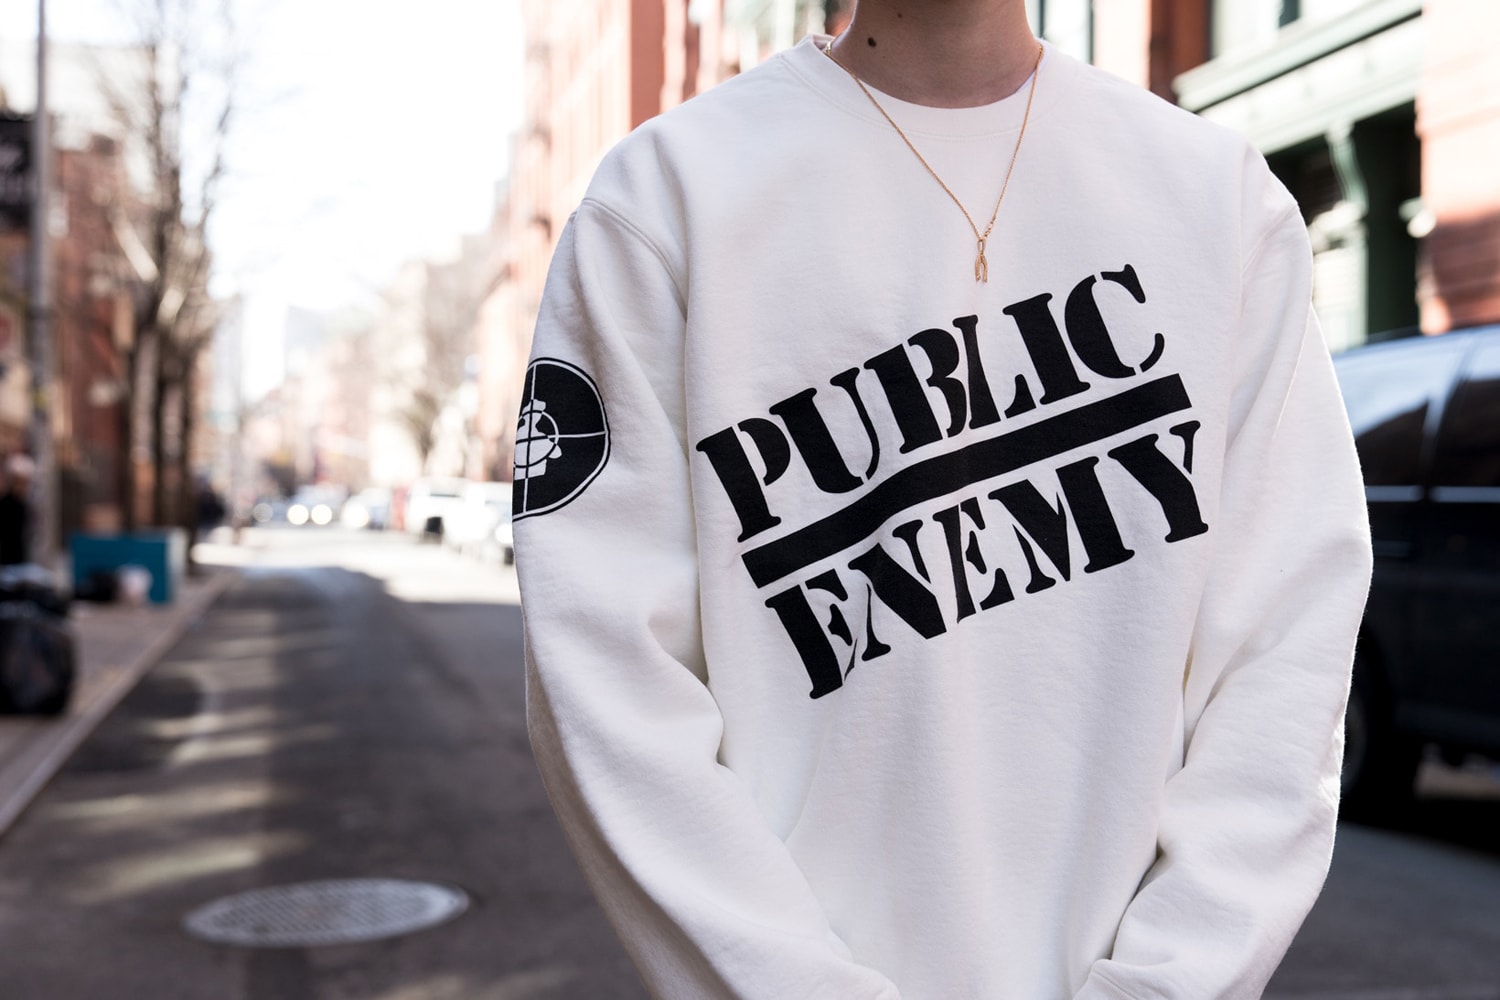 슈프림 x 언더커버 x 퍼블릭 에너미 발매 현장 & 스트릿 패션 2018, supreme undercover public enemy collaboration collection street fashion